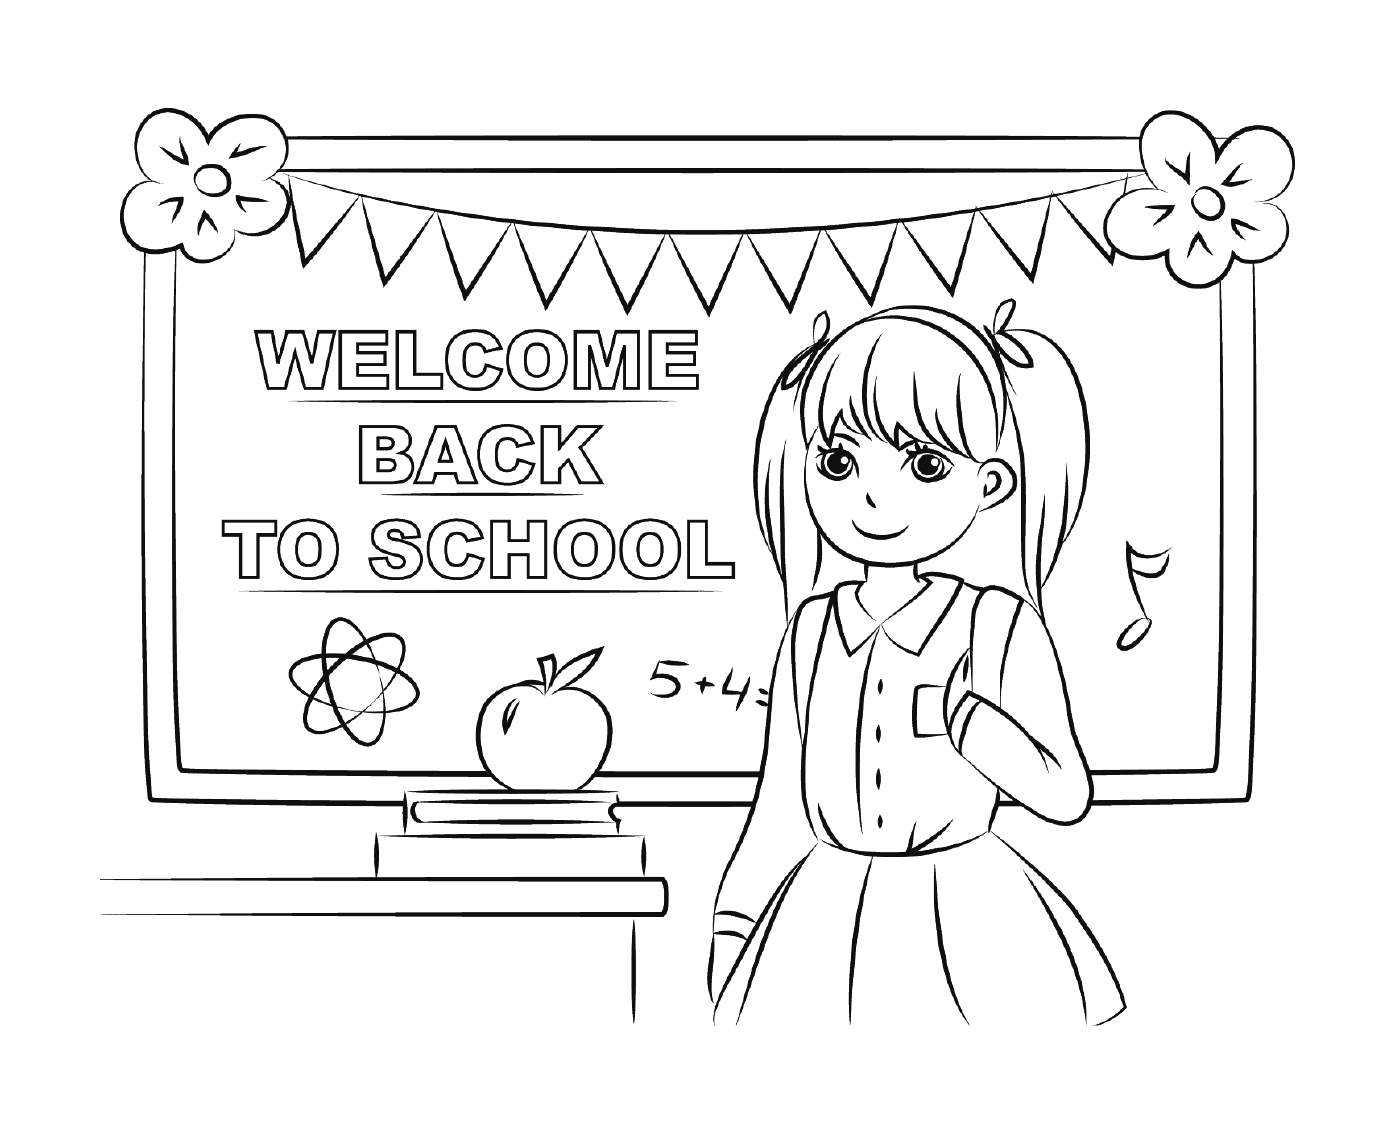  欢迎回到学校 